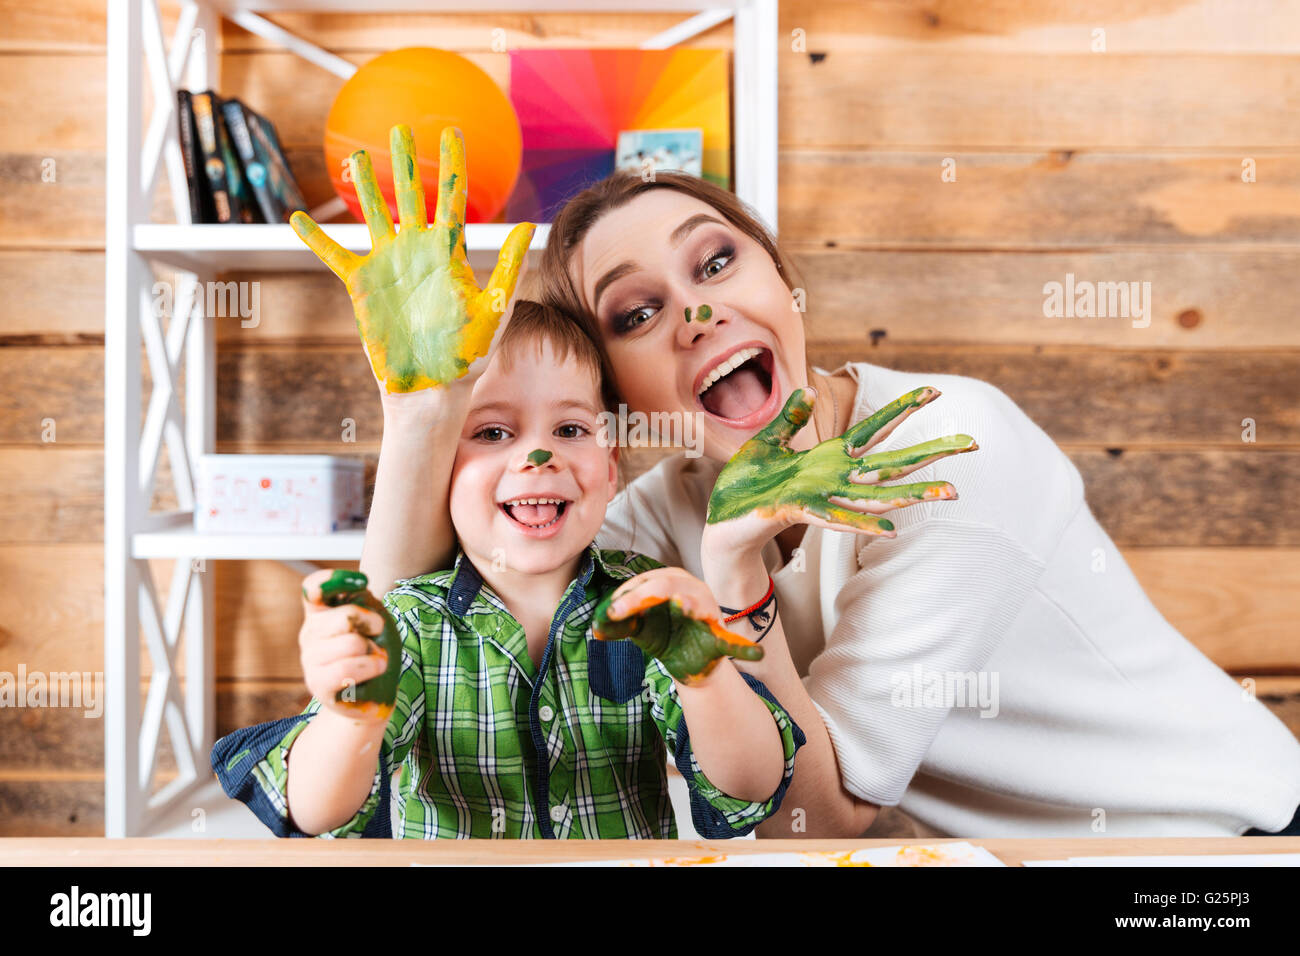 Fröhlich aufgeregt Mutter und kleinen Sohn mit bemalten Händen in bunten Farben, die gemeinsam Spaß haben Stockfoto